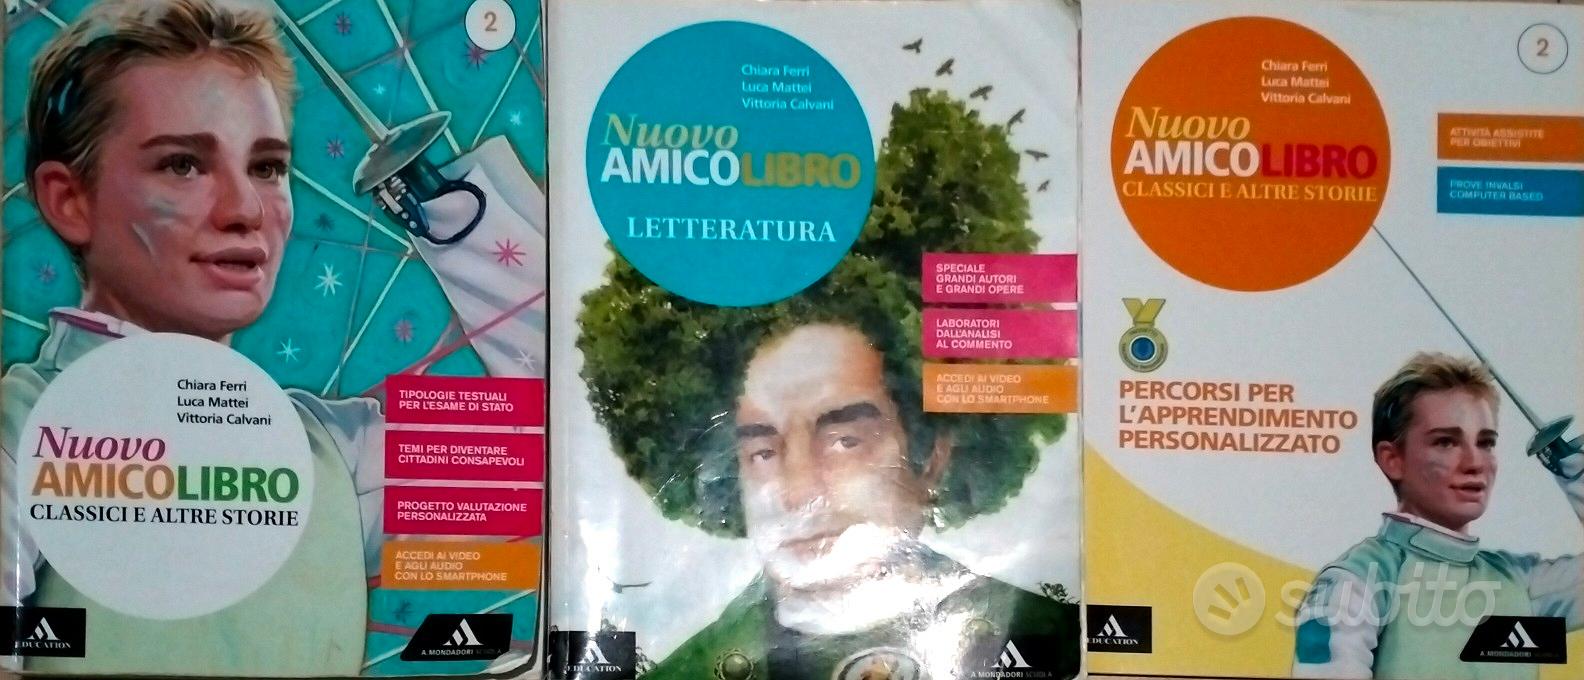 Fabio Volo - Libri e Riviste In vendita a Cosenza